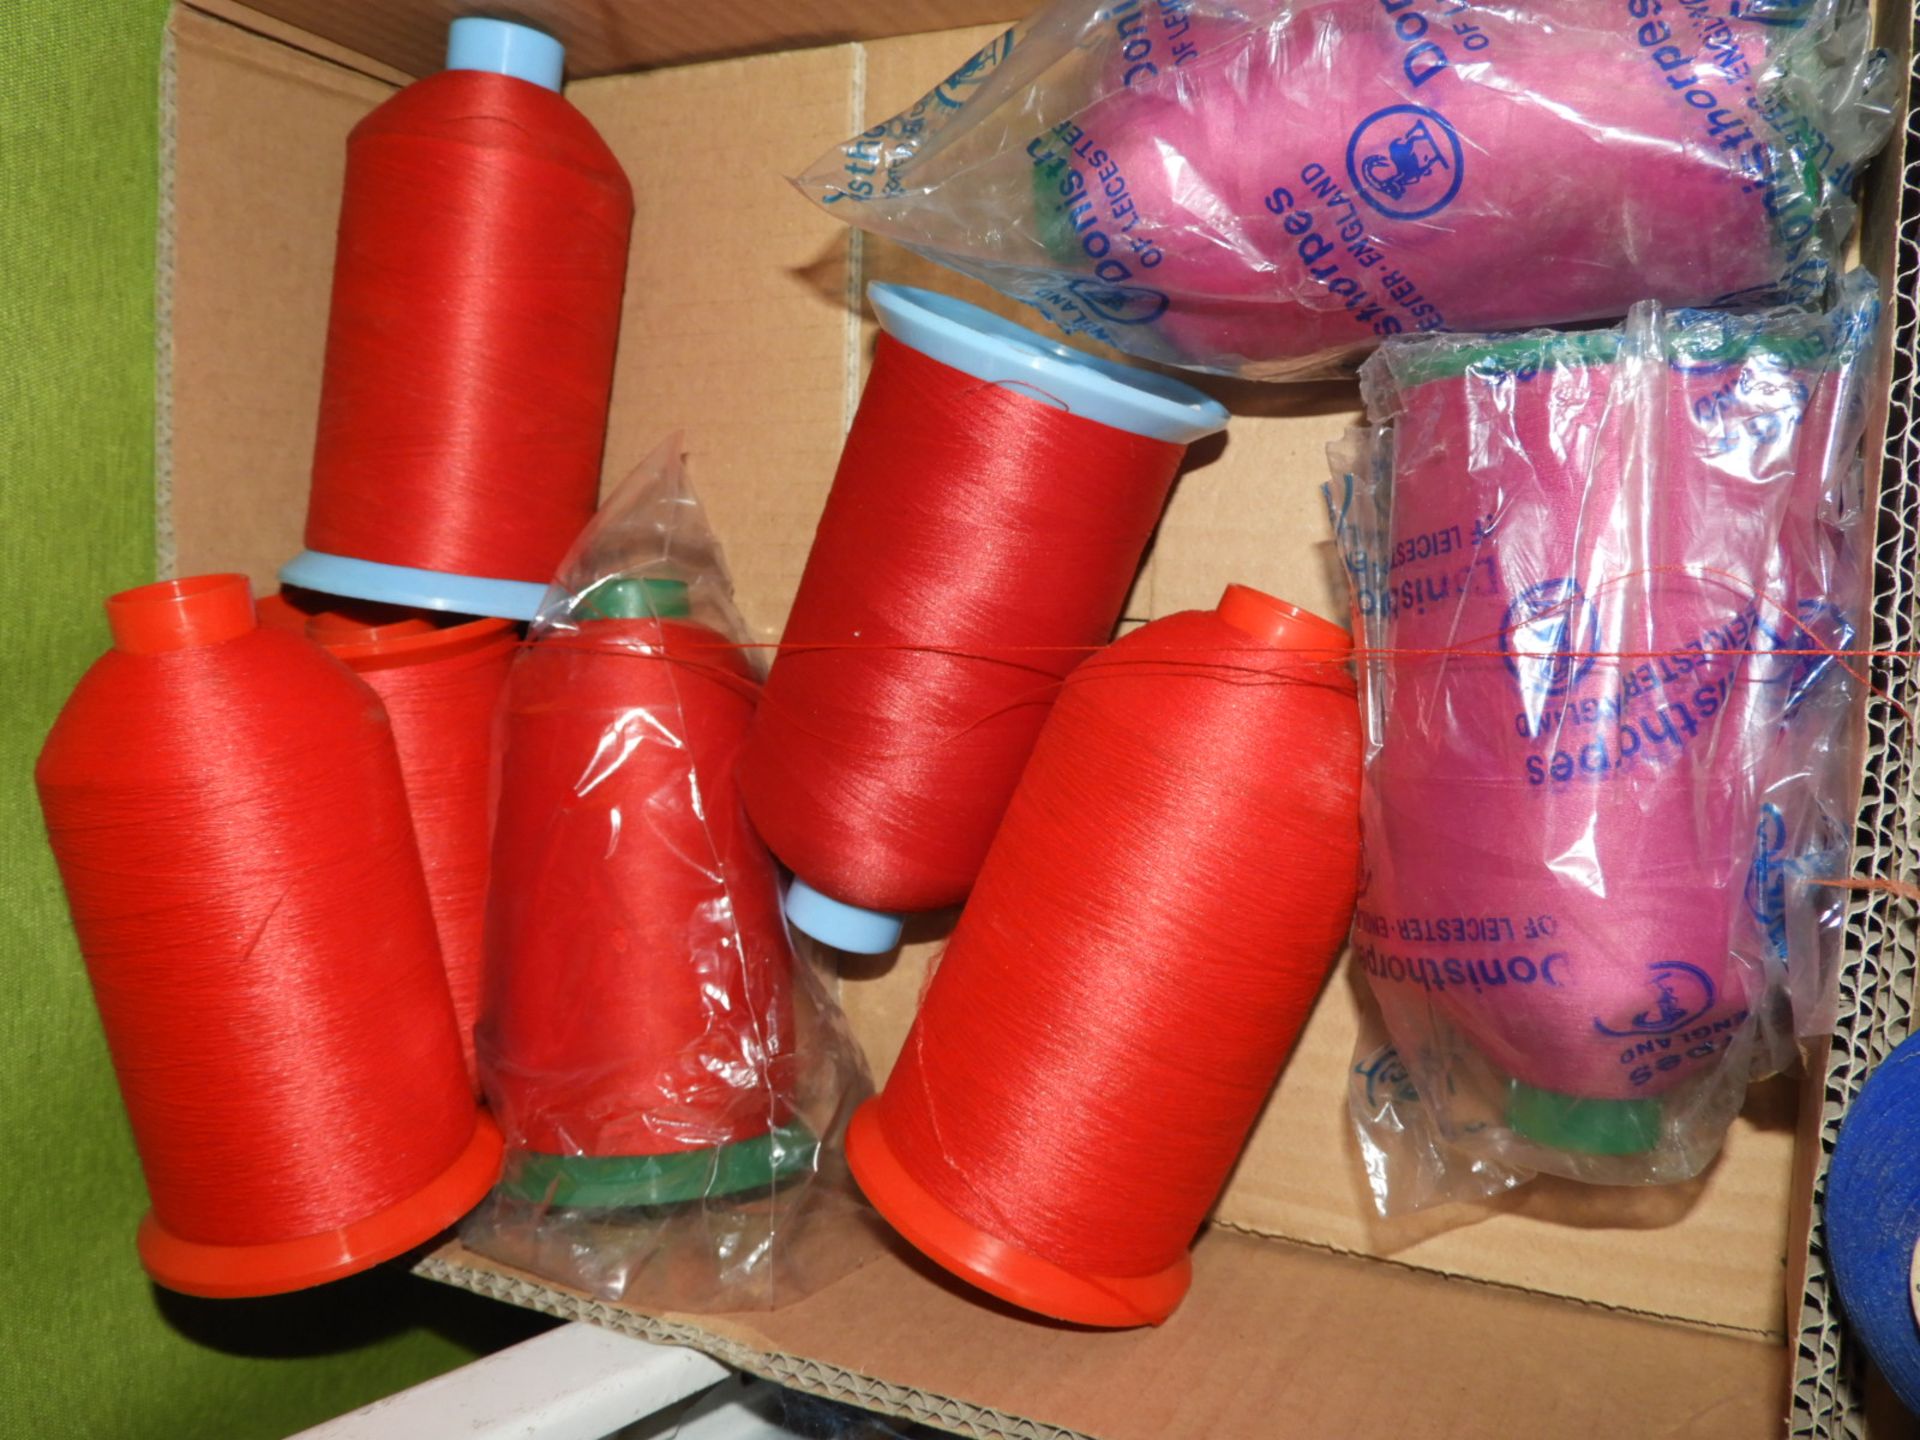 Box Containing Twelve Cones of Thread